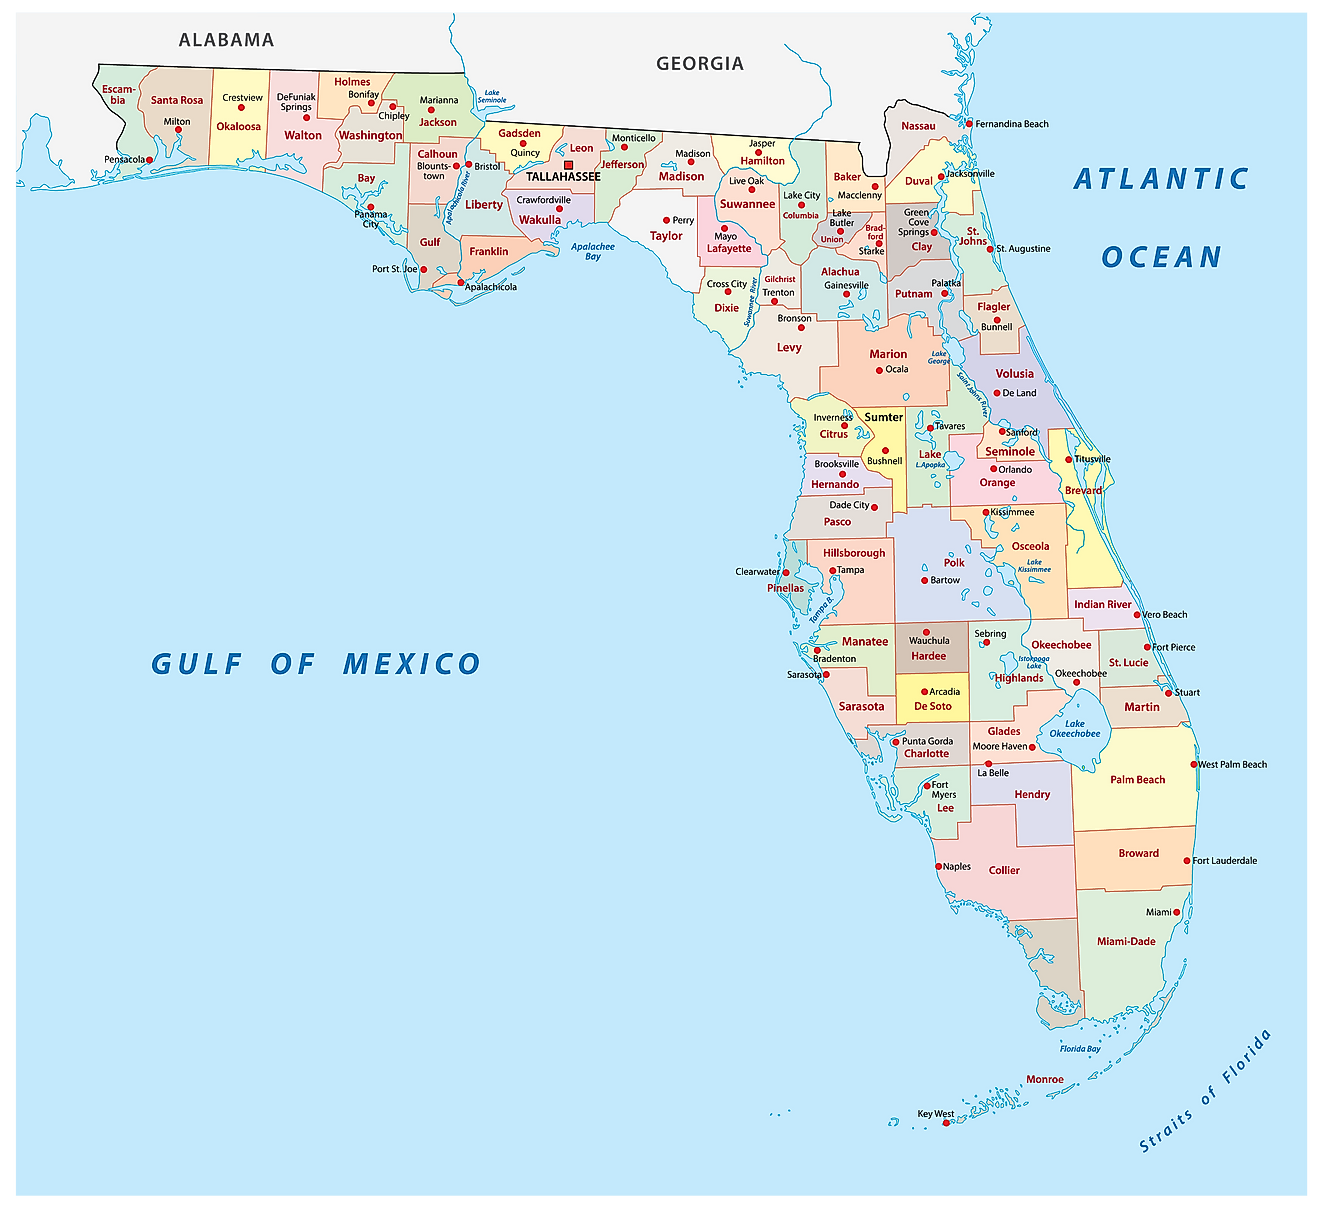 Mapa administrativo de Florida que muestra sus 67 condados y su ciudad capital - Tallahassee